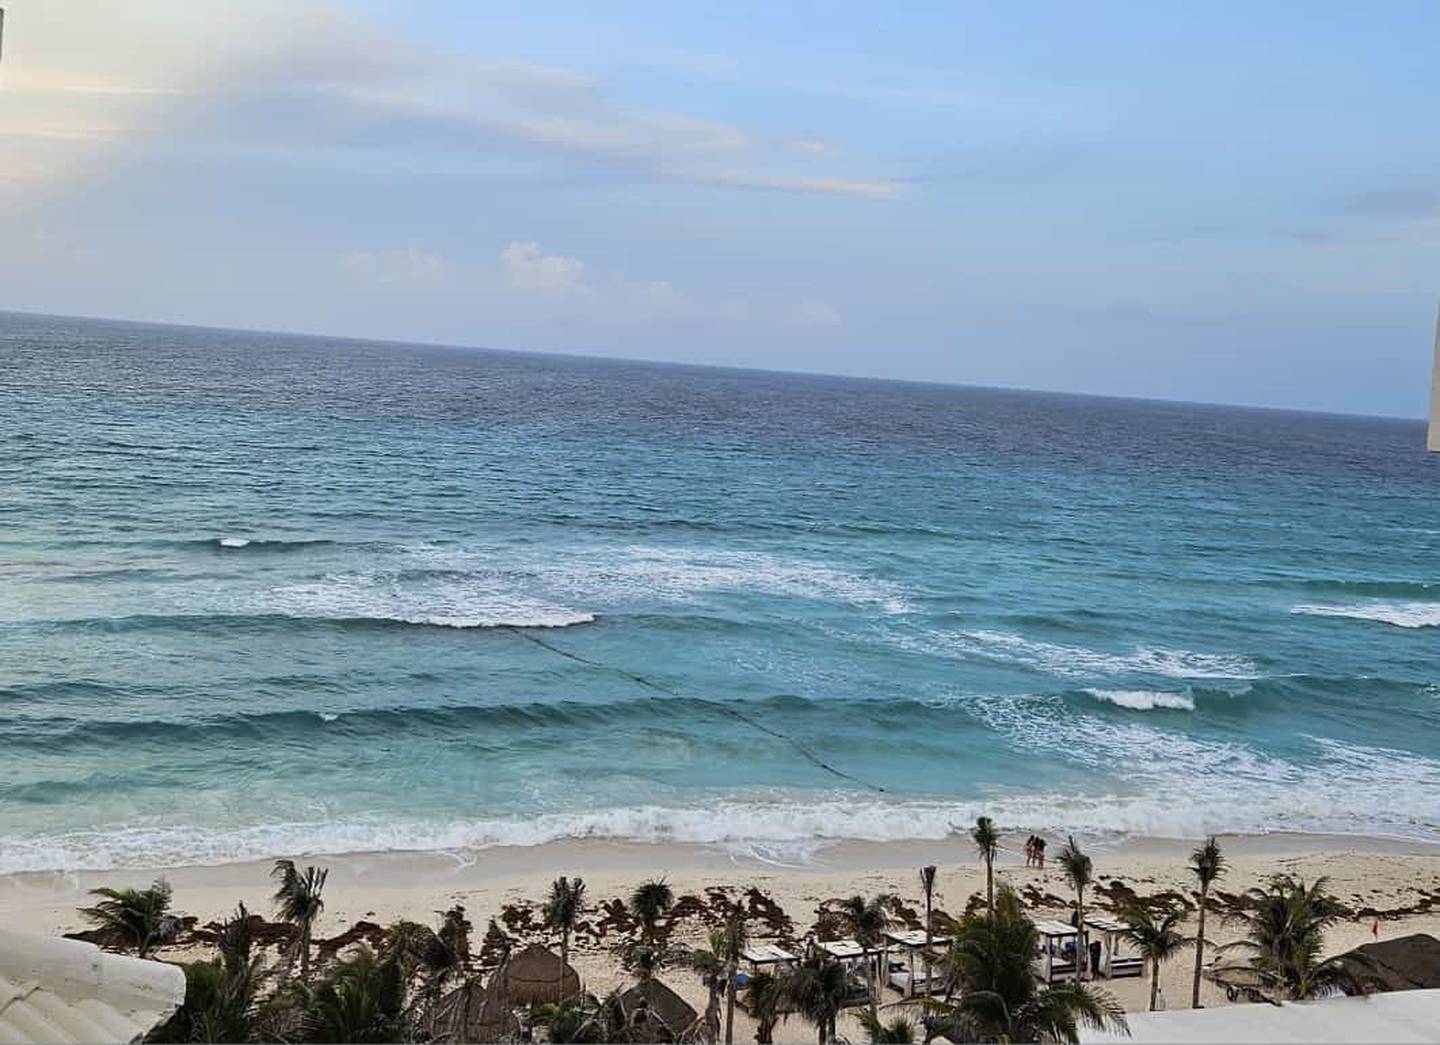 Todos hemos escuchado hablar de Cancún, una ciudad mexicana con hermosas playas y con un ambiente increíble, pero la verdad no hay fotos ni videos que le hagan justicia a este paraíso.